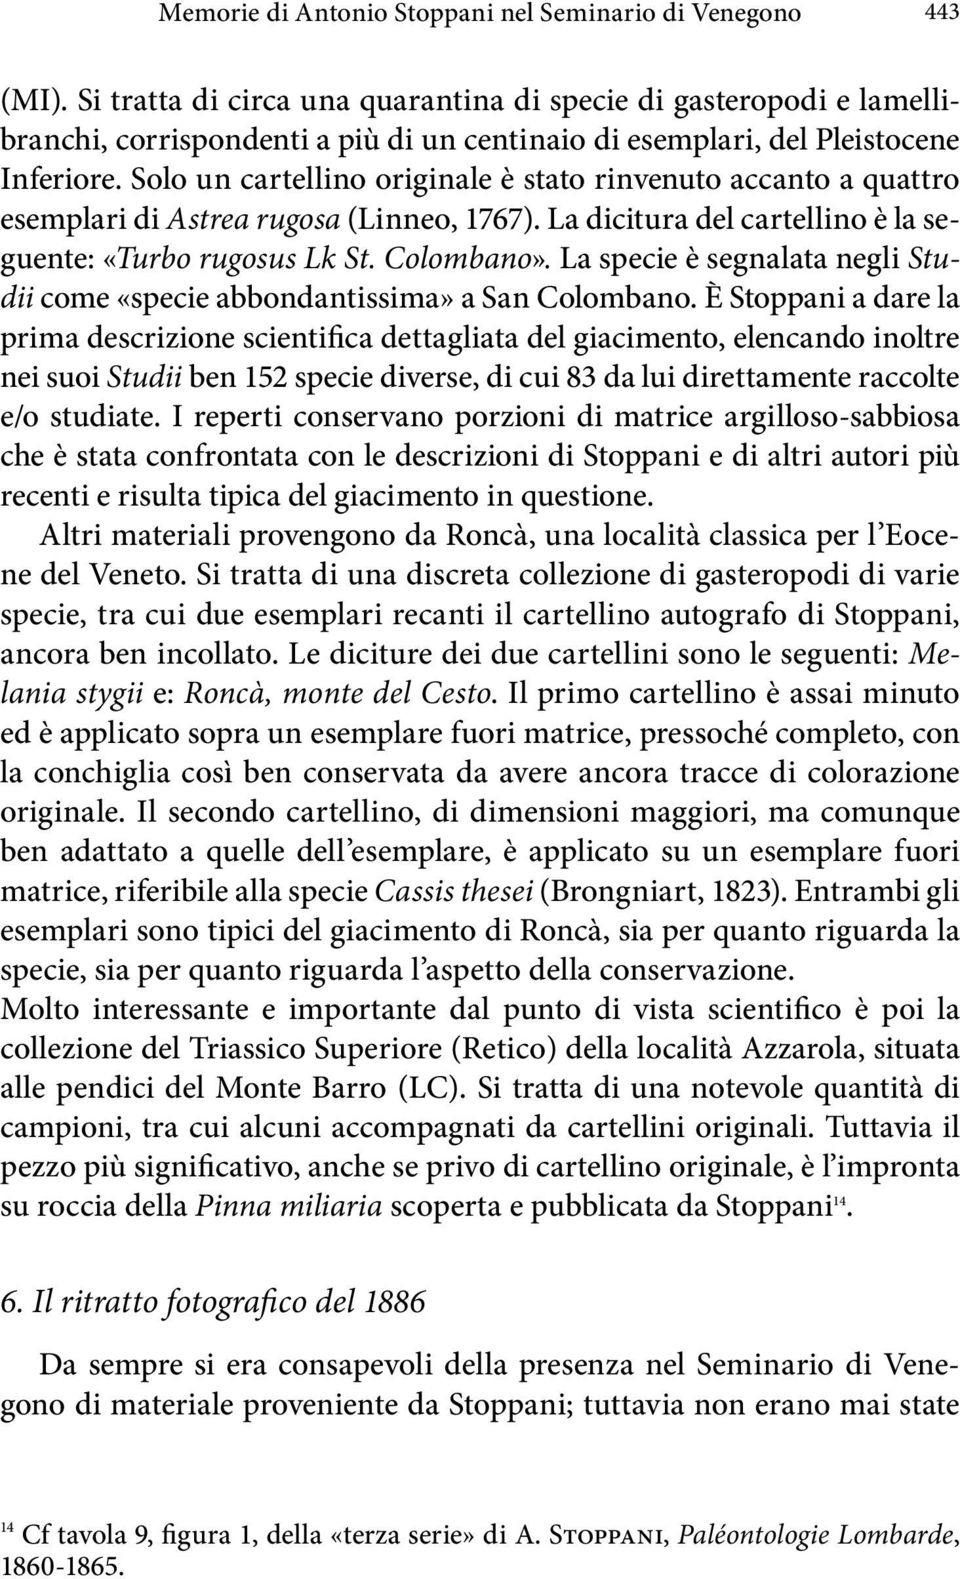 Solo un cartellino originale è stato rinvenuto accanto a quattro esemplari di Astrea rugosa (Linneo, 1767). La dicitura del cartellino è la seguente: «Turbo rugosus Lk St. Colombano».